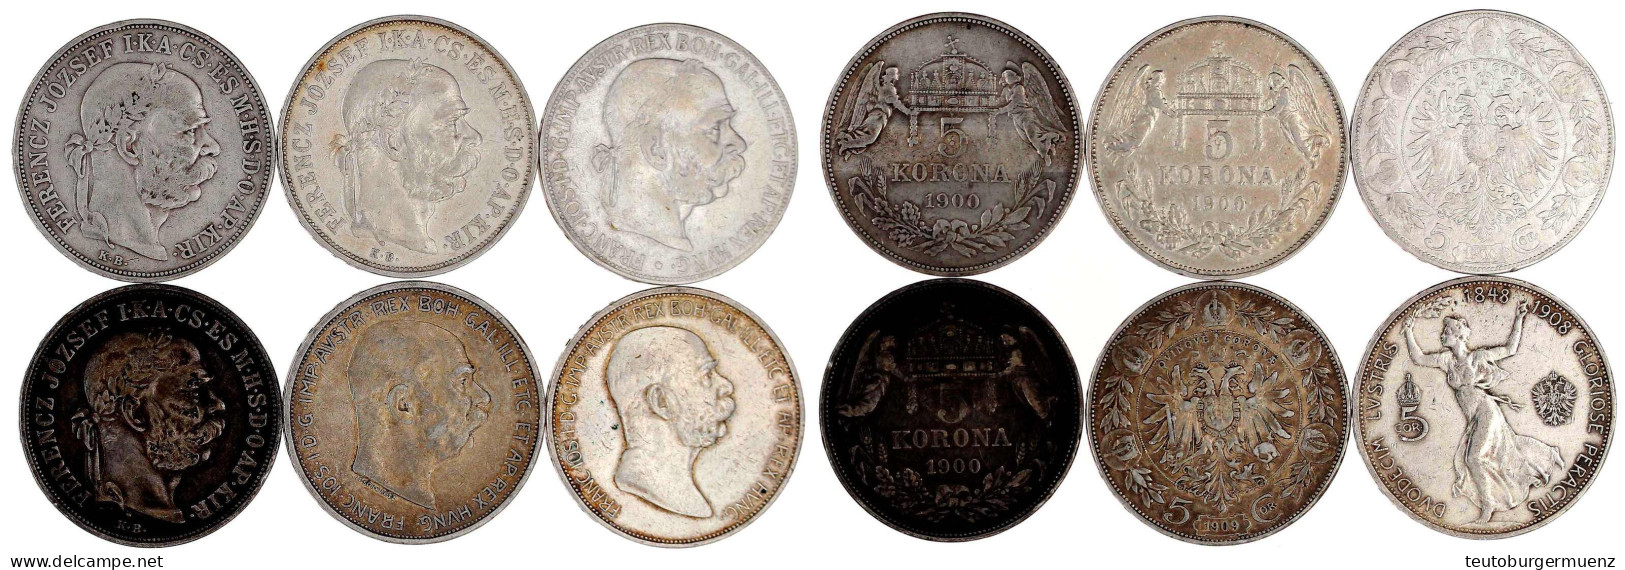 6 X 5 Kronen Aus 1900 Bis 1909, Dabei Auch Regierungsjub. 1908. Meist Sehr Schön - Gold Coins